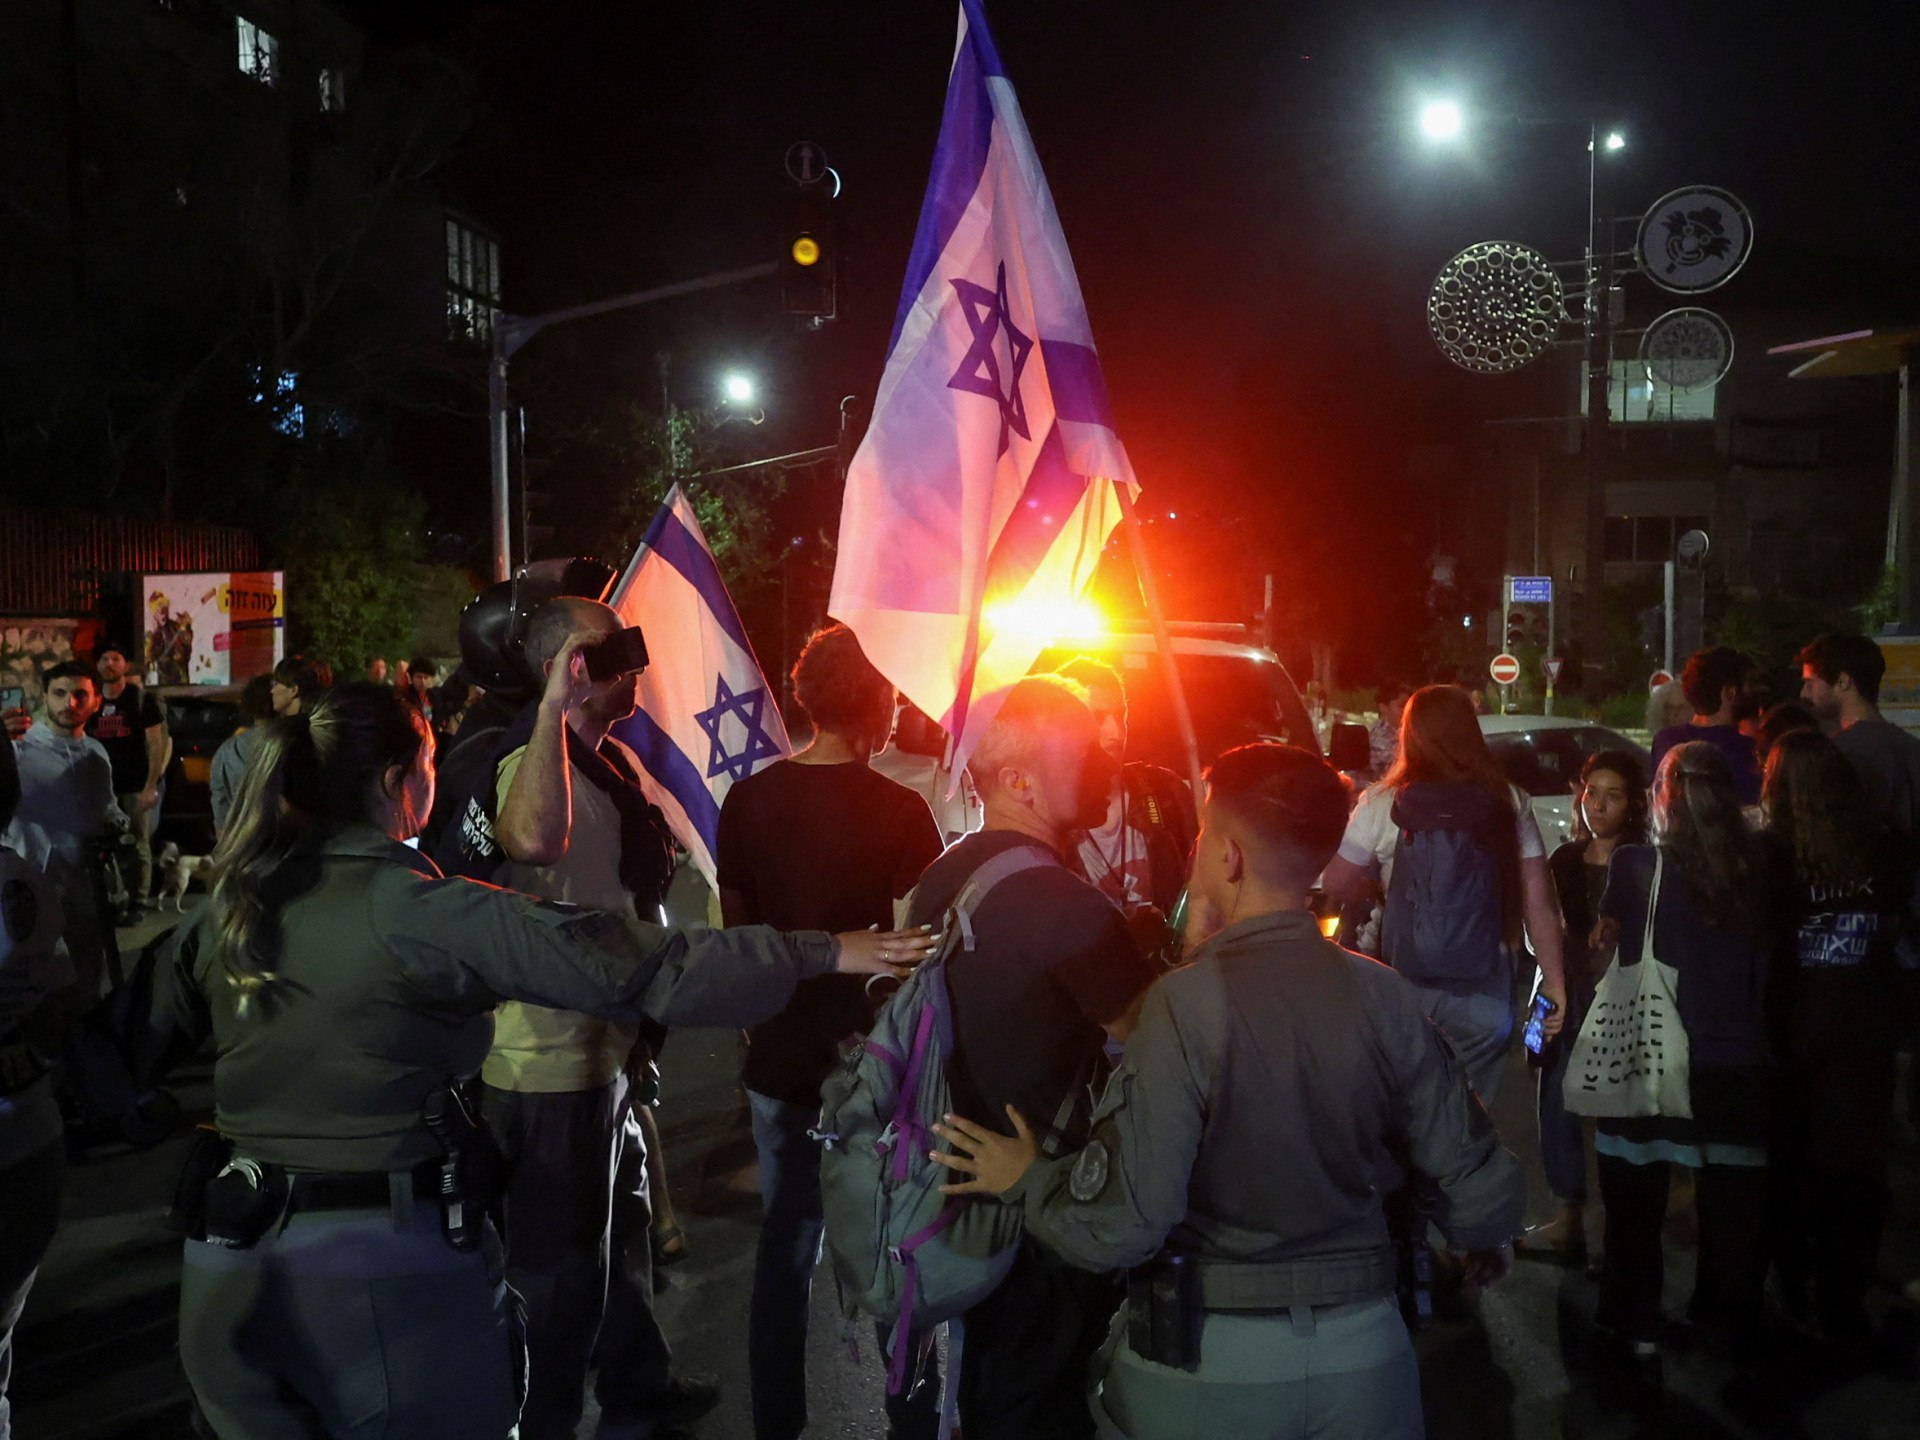 الاحتجاجات أمام منزل نتنياهو تغضب مسؤولين إسرائيليين | أخبار – البوكس نيوز